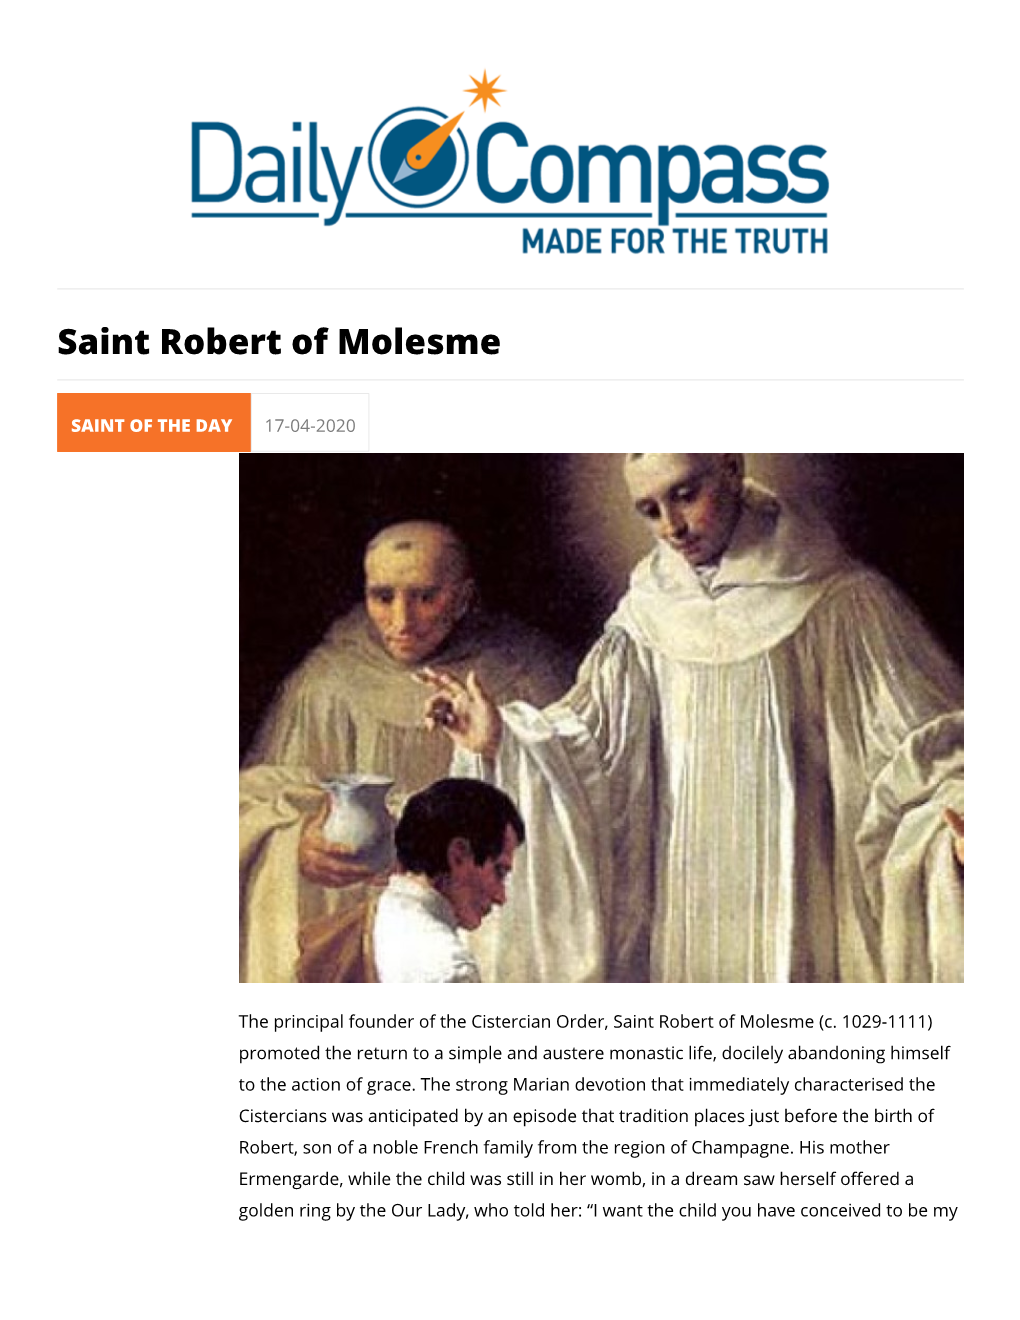 Saint Robert of Molesme